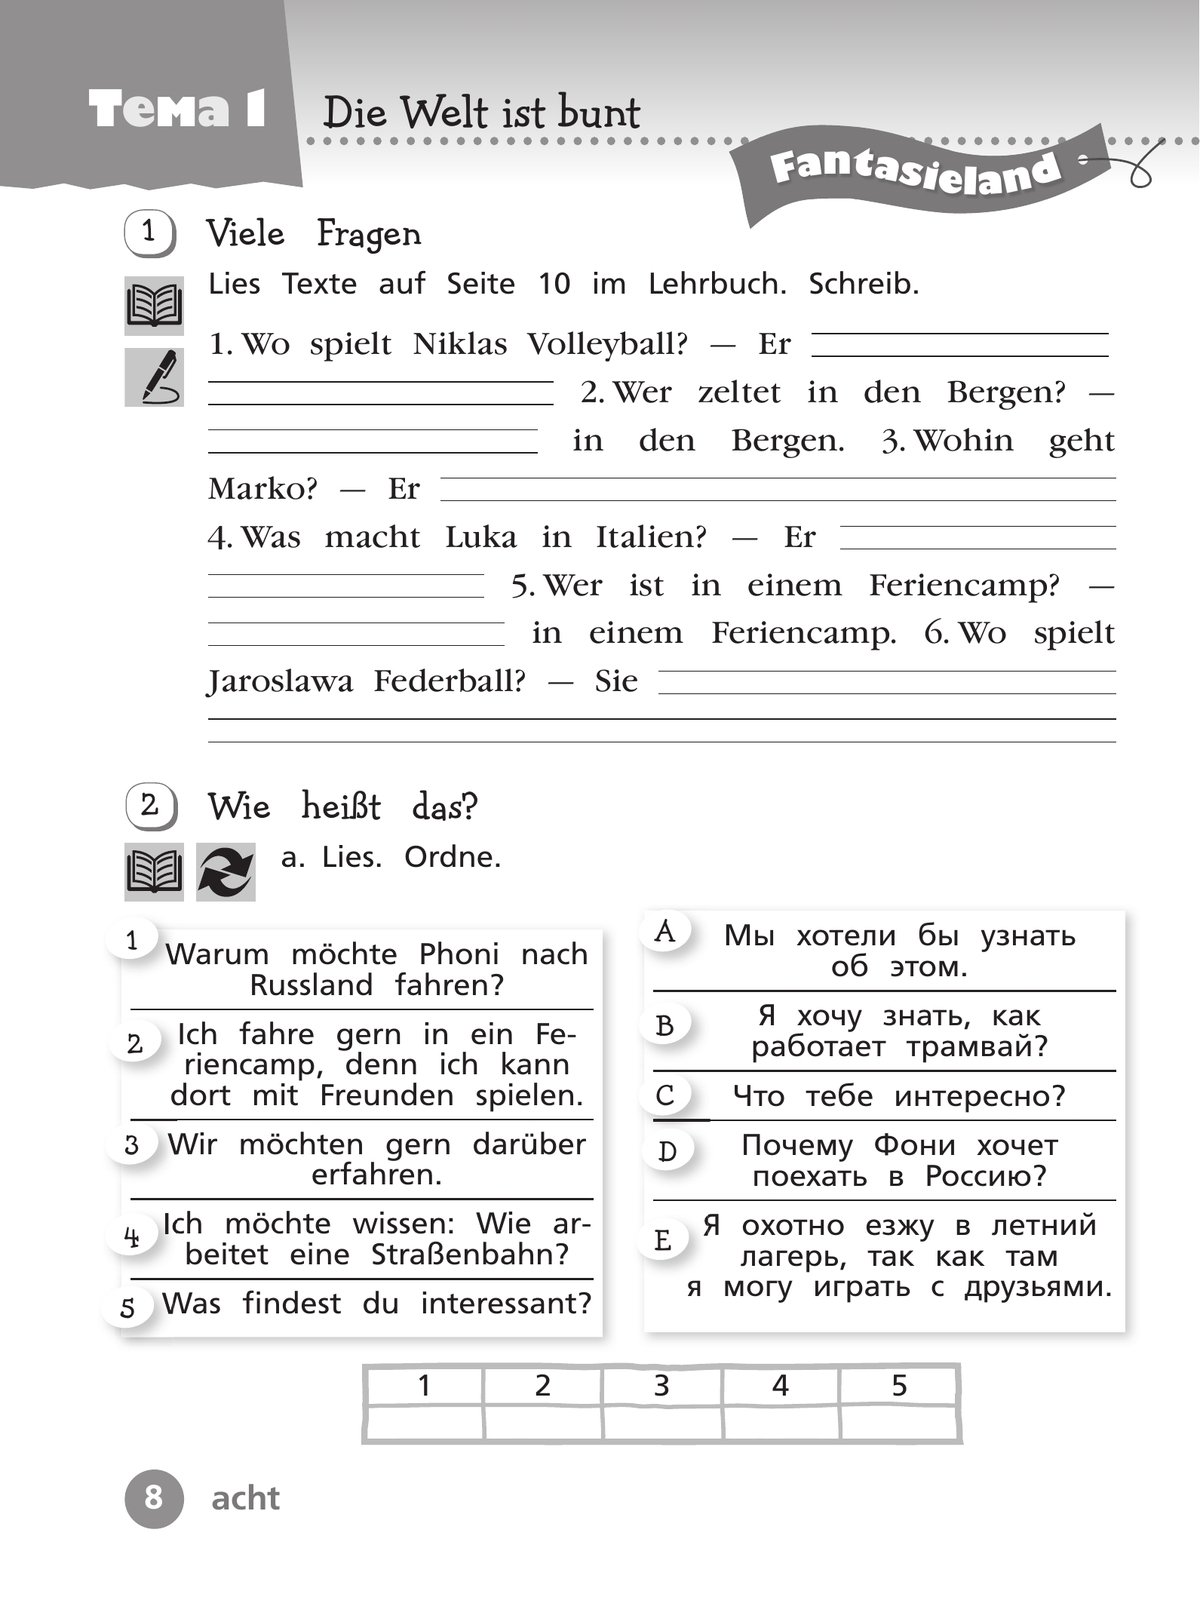 Немецкий язык. Рабочая тетрадь. 4 класс. В 2 ч. Часть 1 7